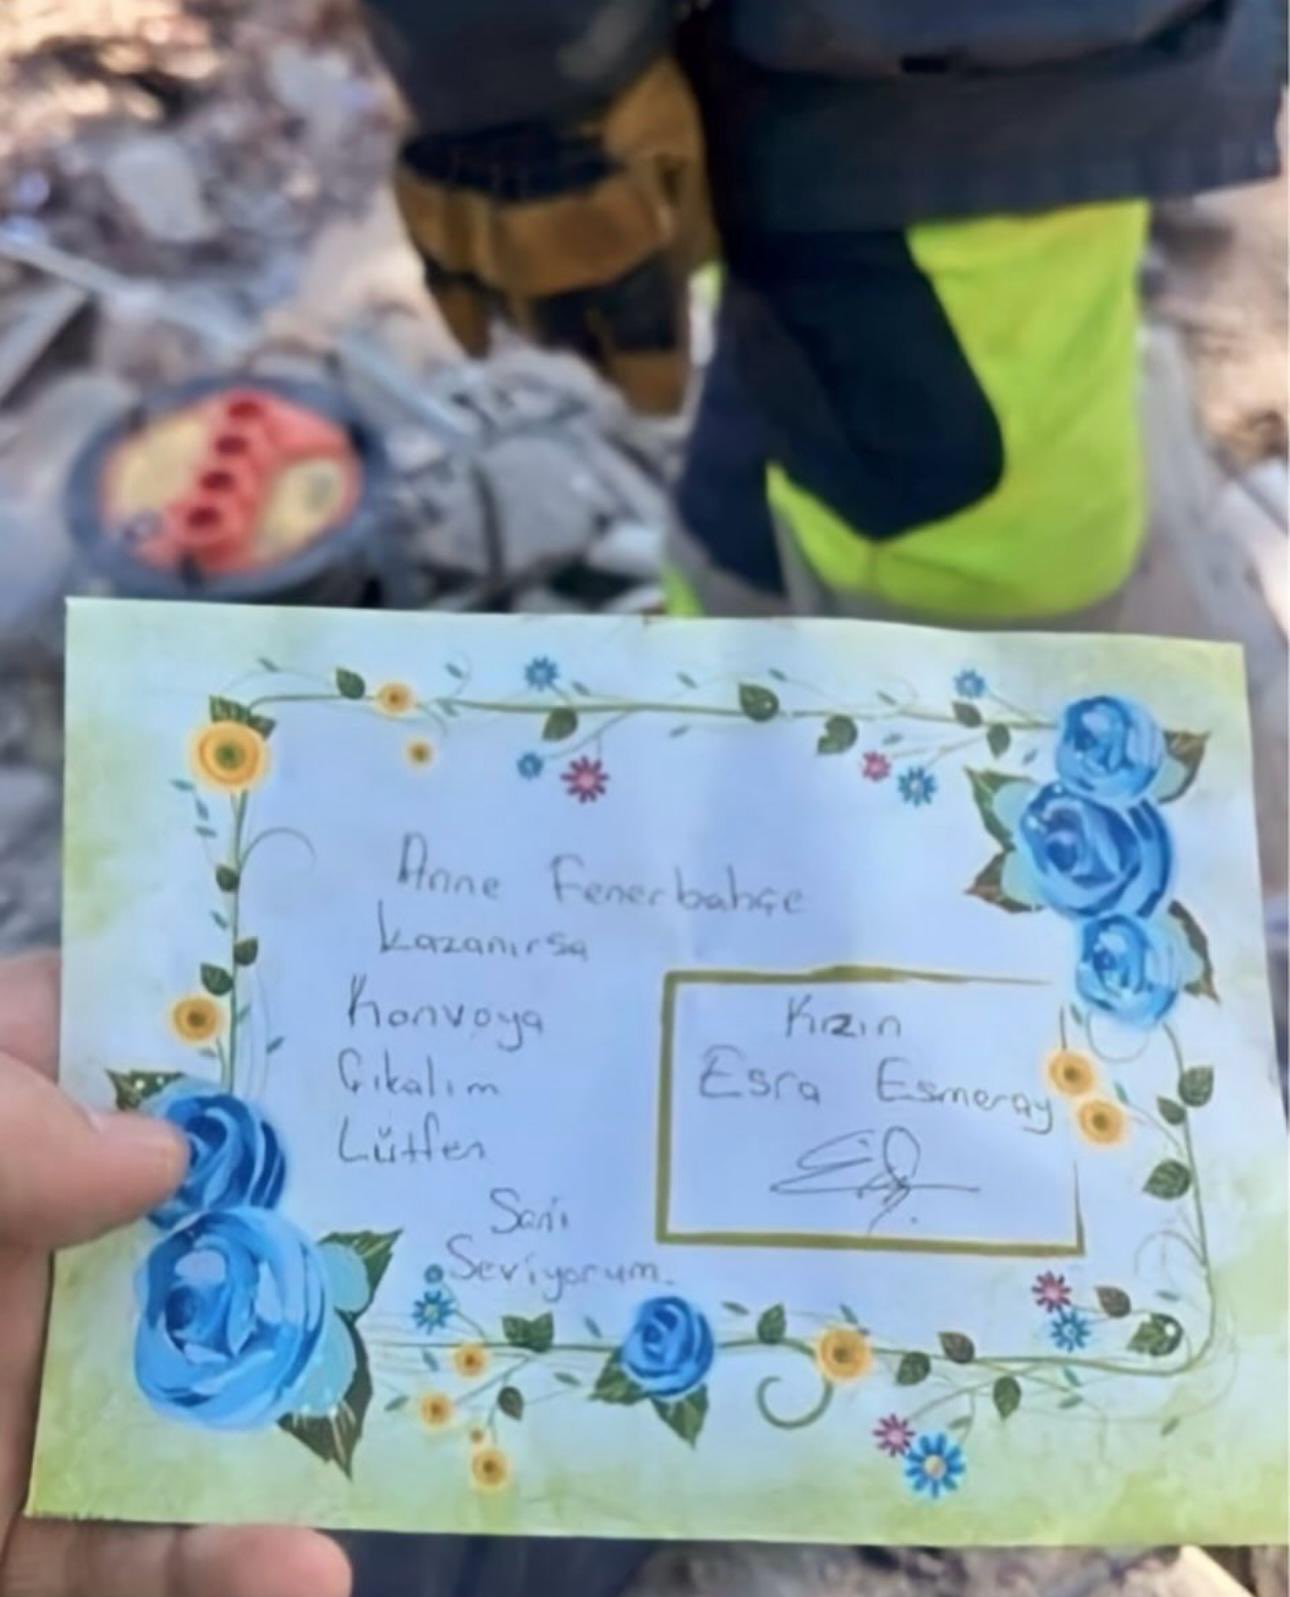 Depremde Enkazda Bulunan Küçük Kız Esra'nın Acı Dolu Öyküsü! Fenerbahçe Sahip Çıktı!